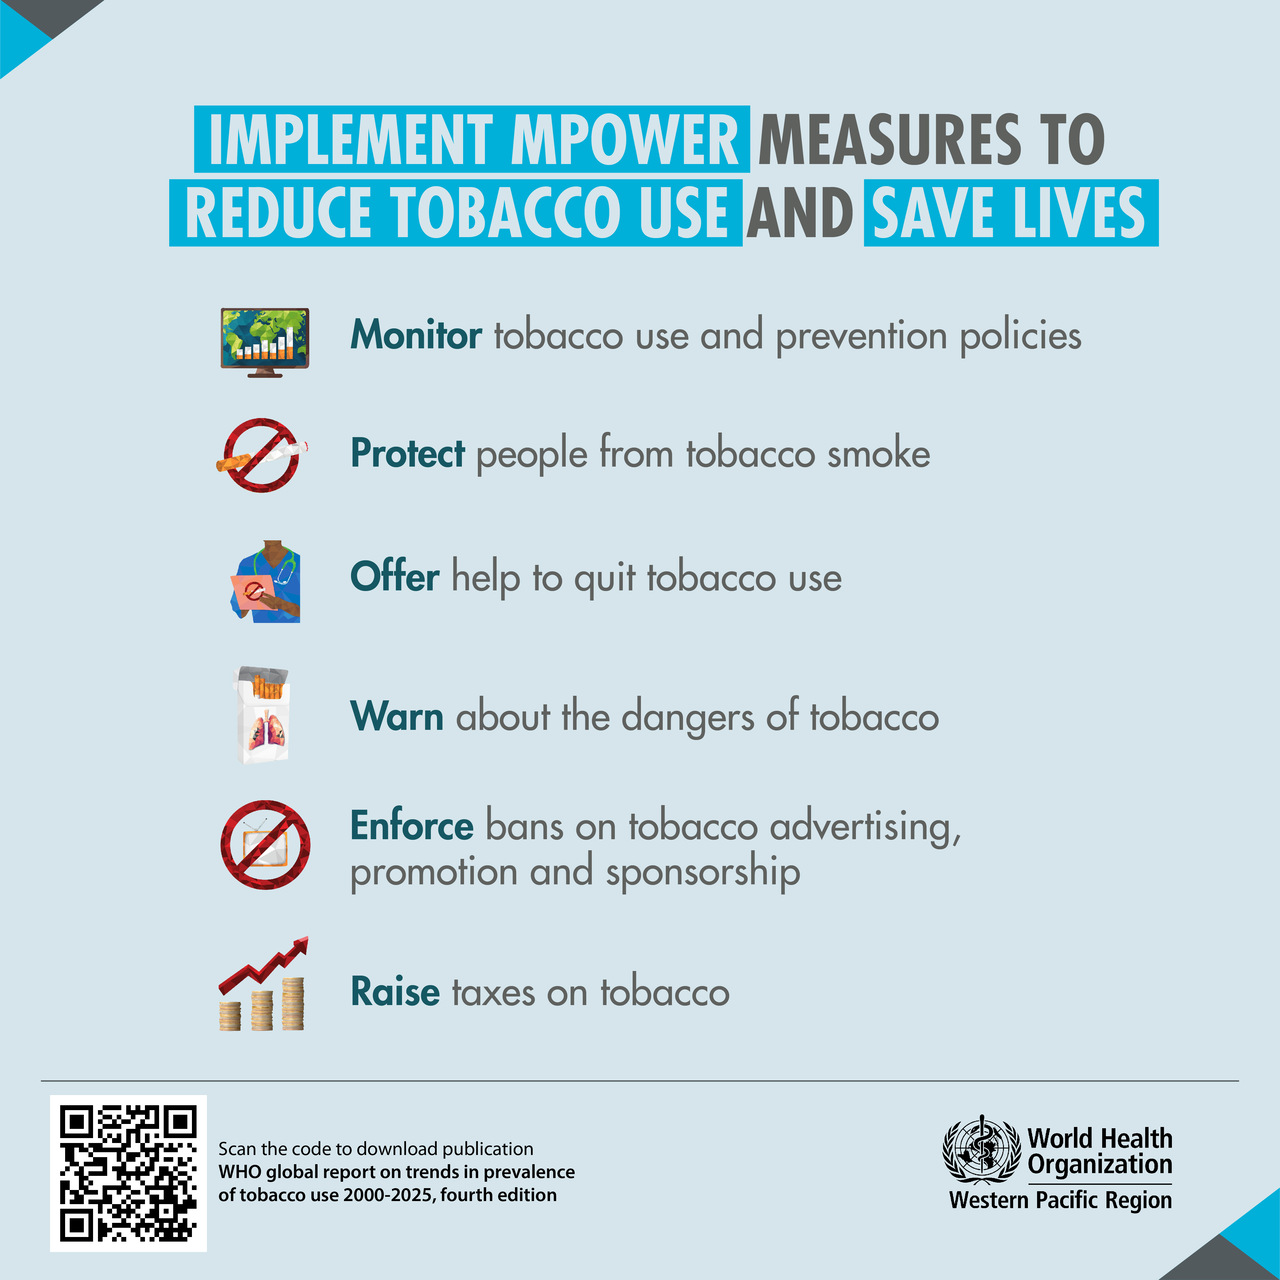 Tytoń: palenie w dalszym ciągu zatruwa naszą planetę, ale globalne środki mające na celu zwalczanie tego zjawiska działają